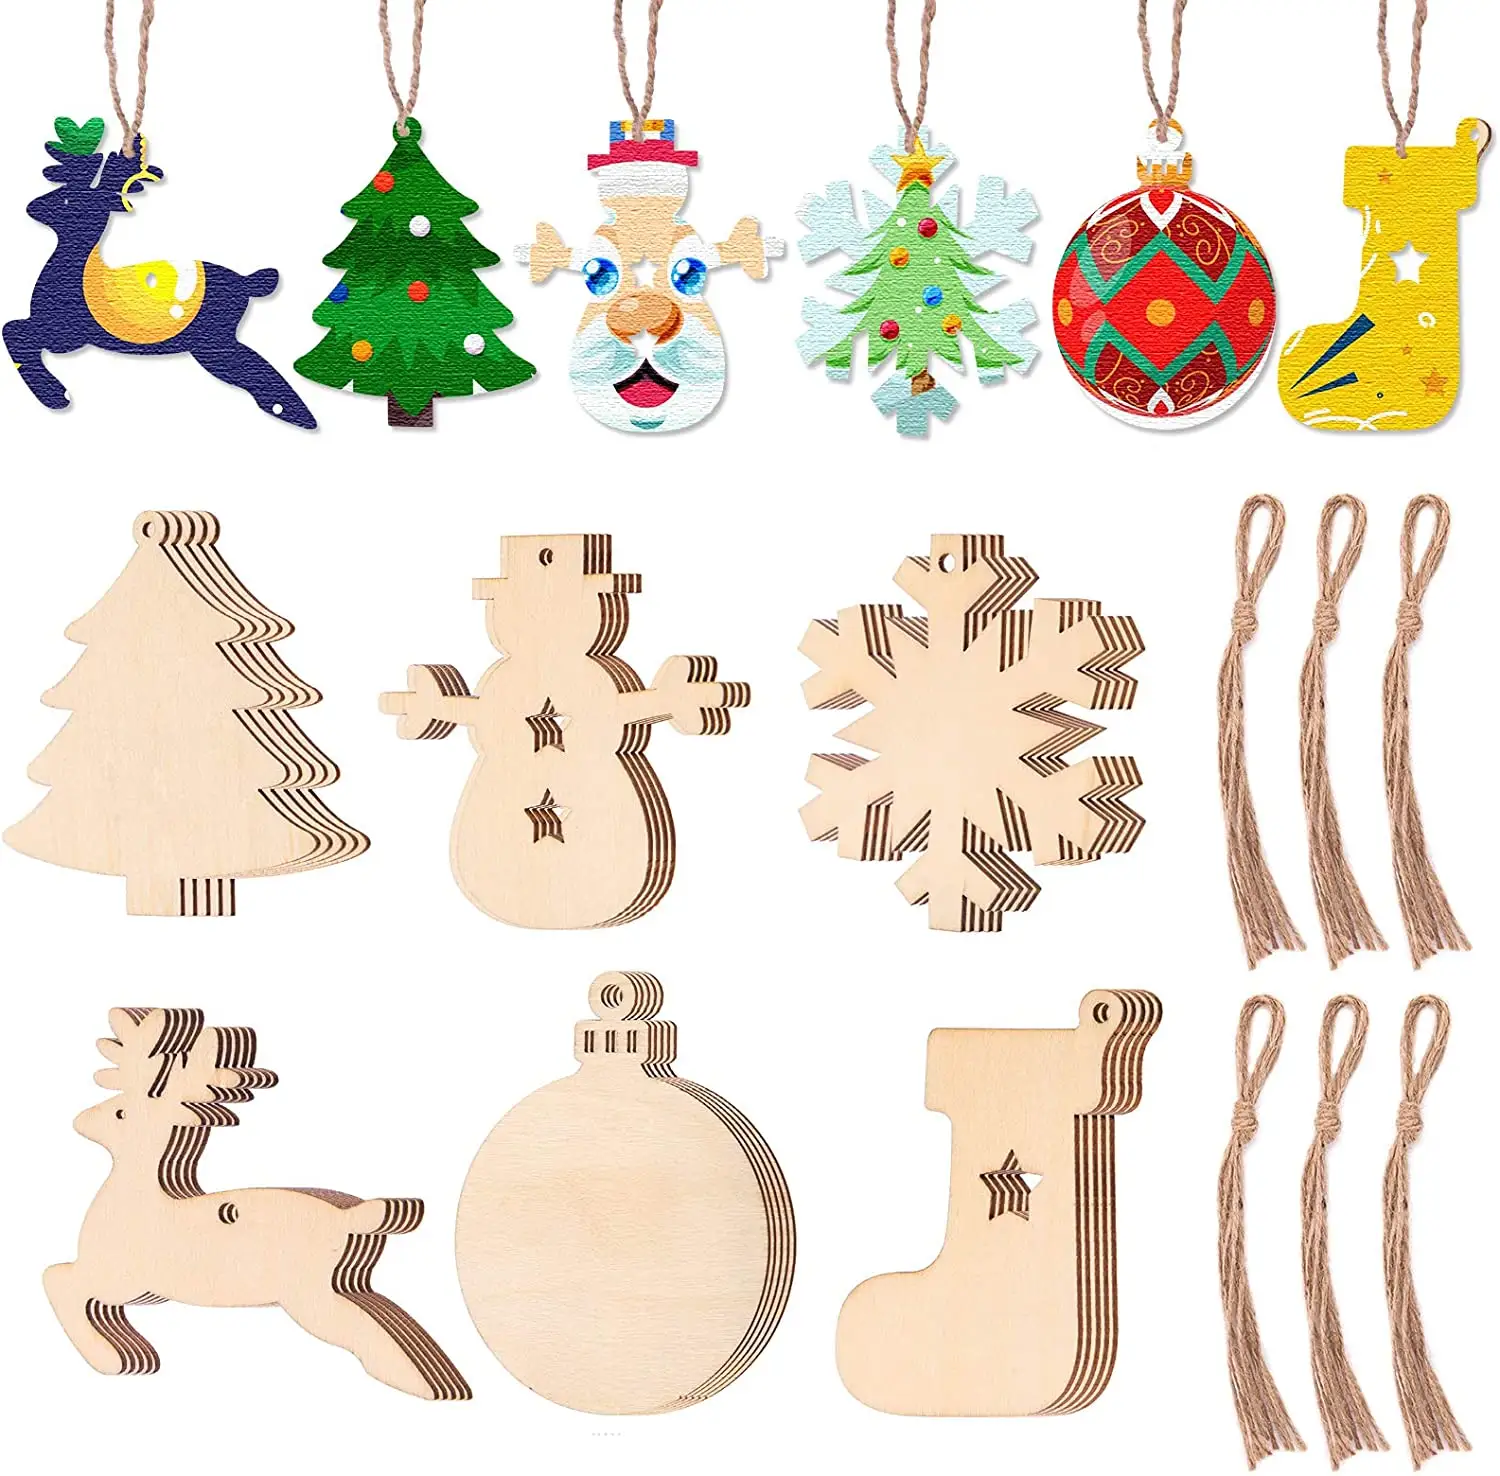 Ornamenti natalizi in legno ornamenti per fette di legno non finiti ornamenti natalizi fai da te artigianato fai da te e ornamenti per l'albero di natale